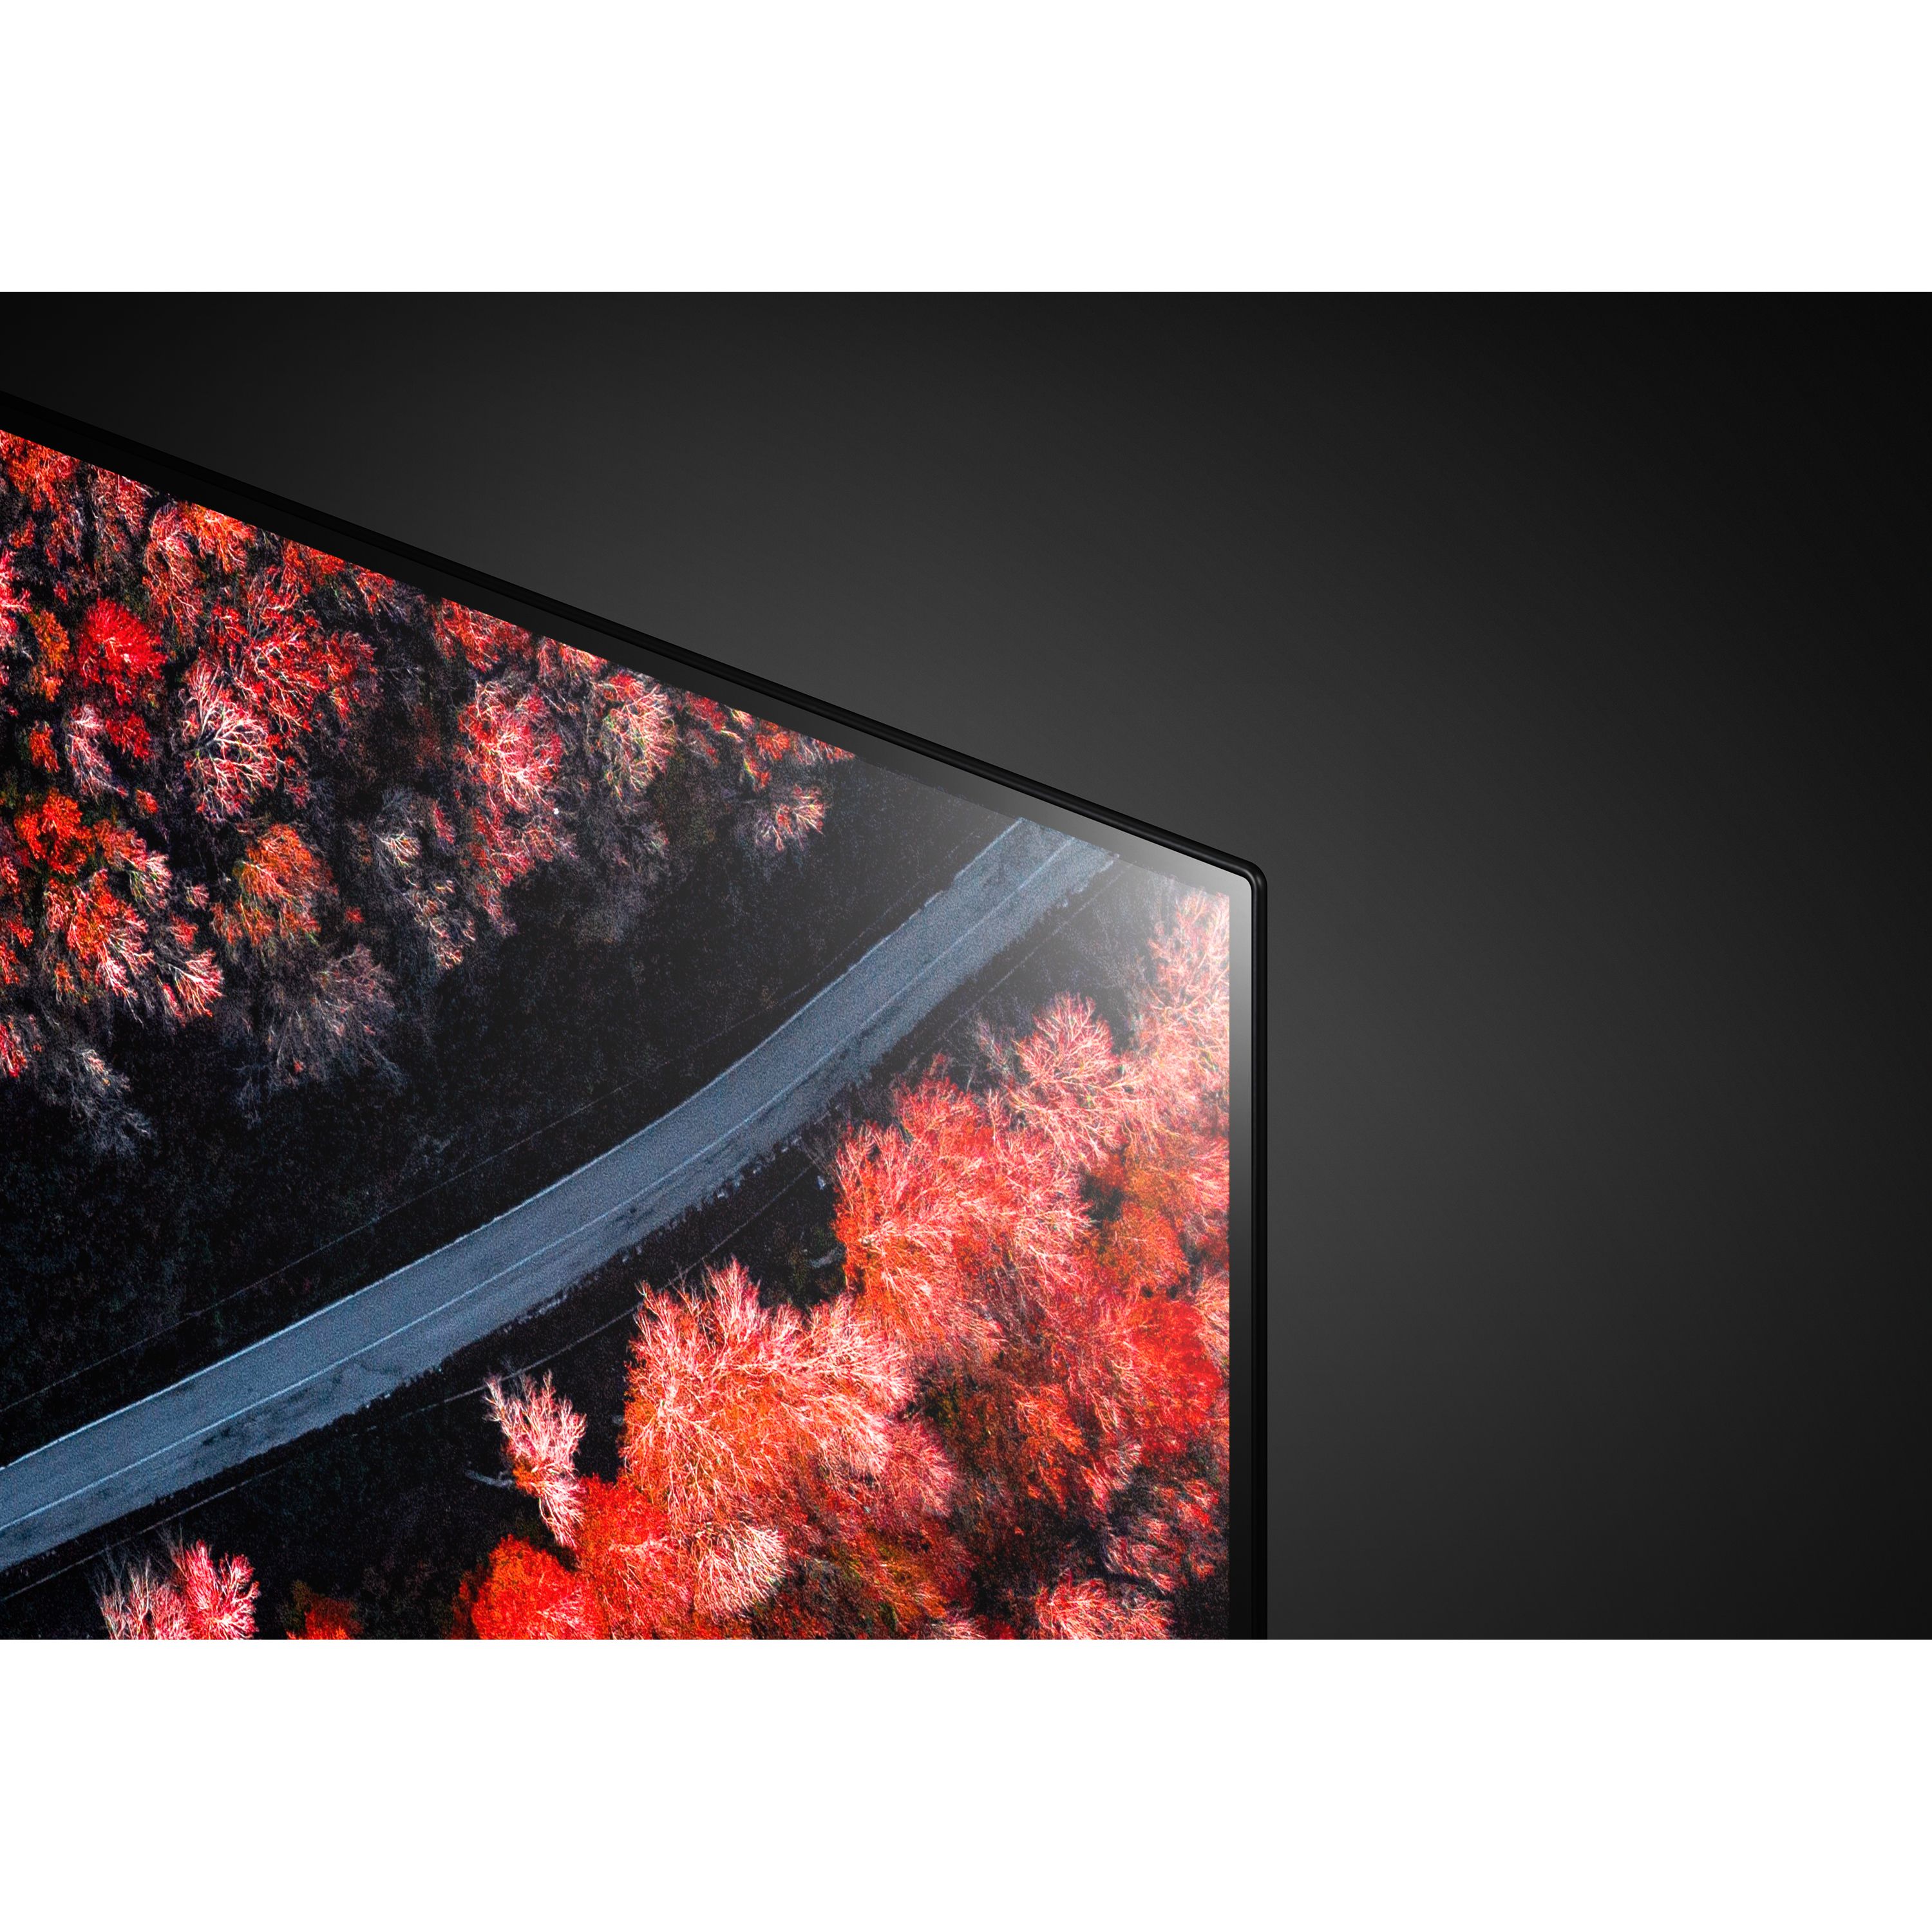 LG 55" Class OLED C9 Series 4K (2160P) Smart Ultra HD HDR TV - OLED55C9PUA 2019 Model - image 9 of 17